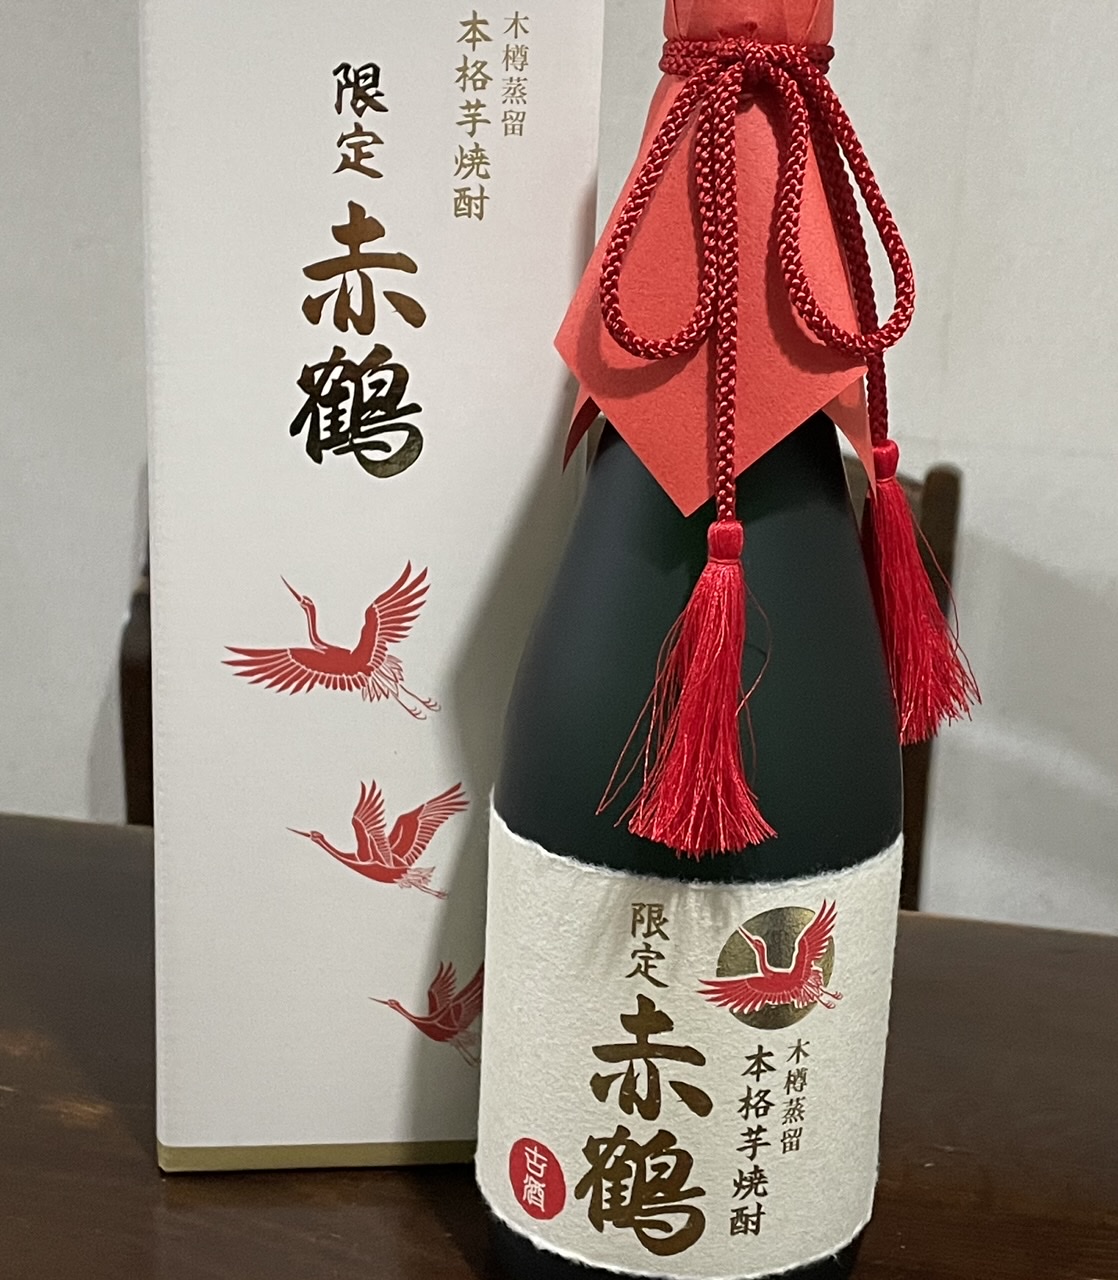 JAL機内限定『赤鶴』本格芋焼酎 二本 - 酒